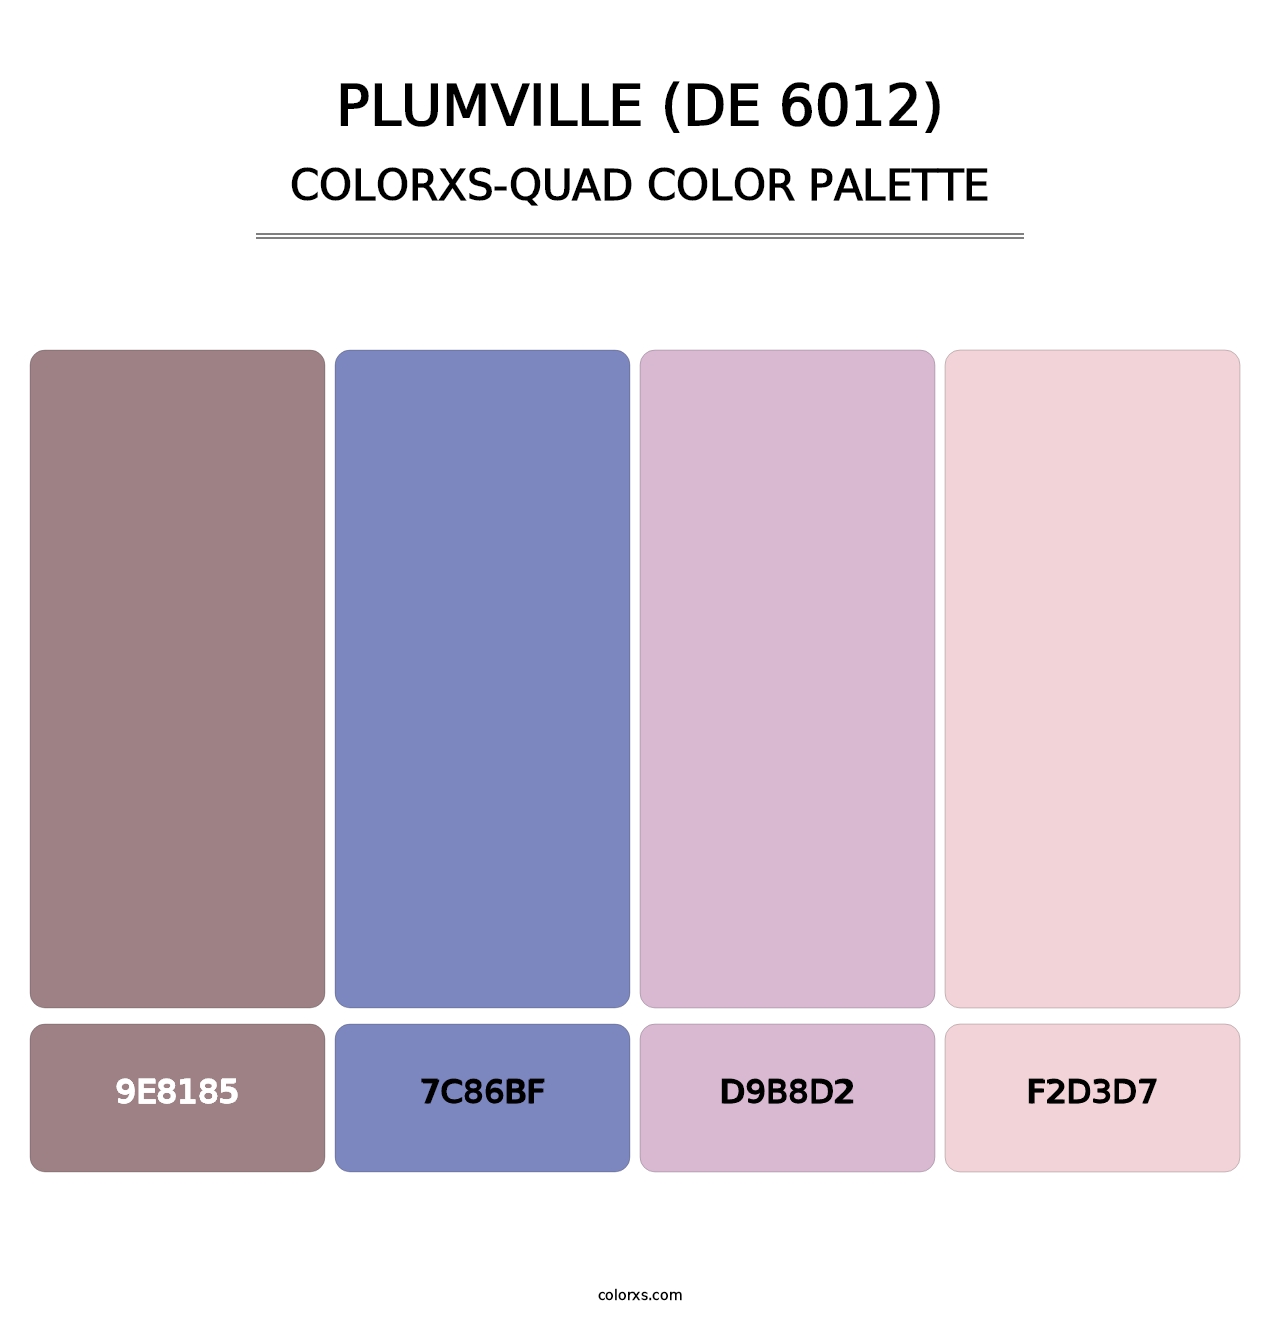 Plumville (DE 6012) - Colorxs Quad Palette